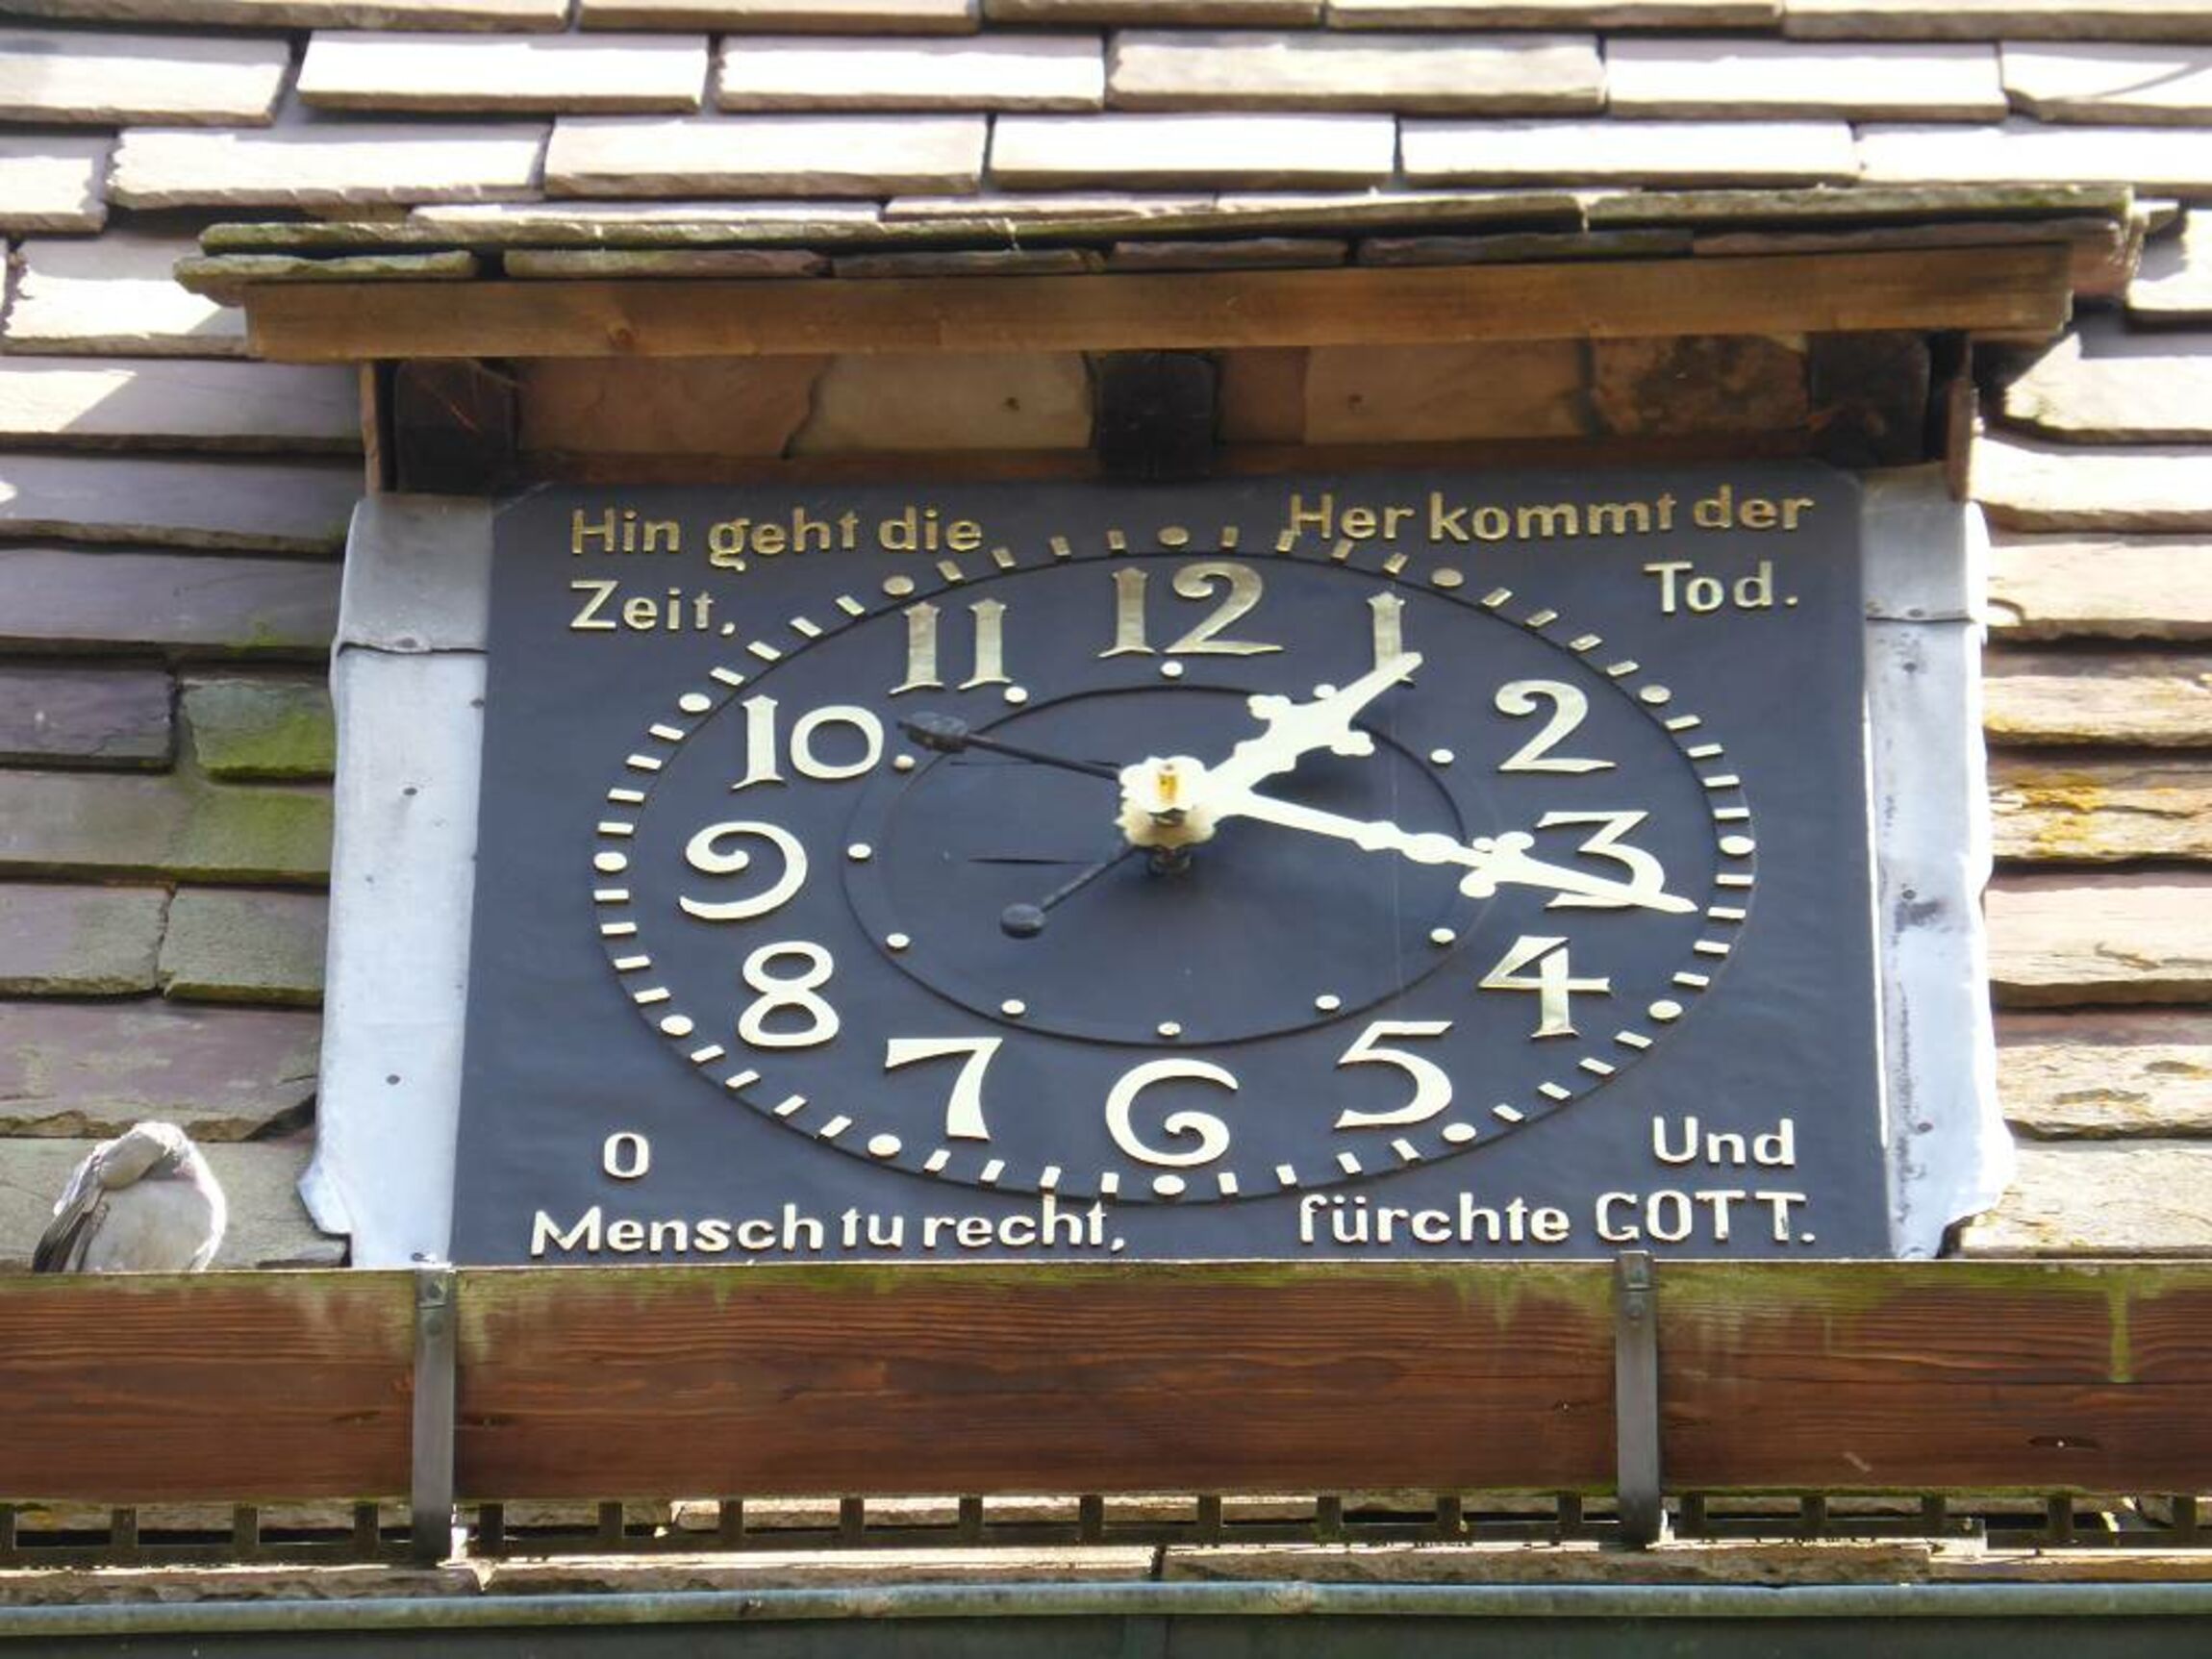 Turmuhr der St. Martinskirche Eimbeckhausen mit der Inschrift:  Hingeht die Zeit, Her kommt der Tod. O Mensch tu recht, Und fürchte Gott.